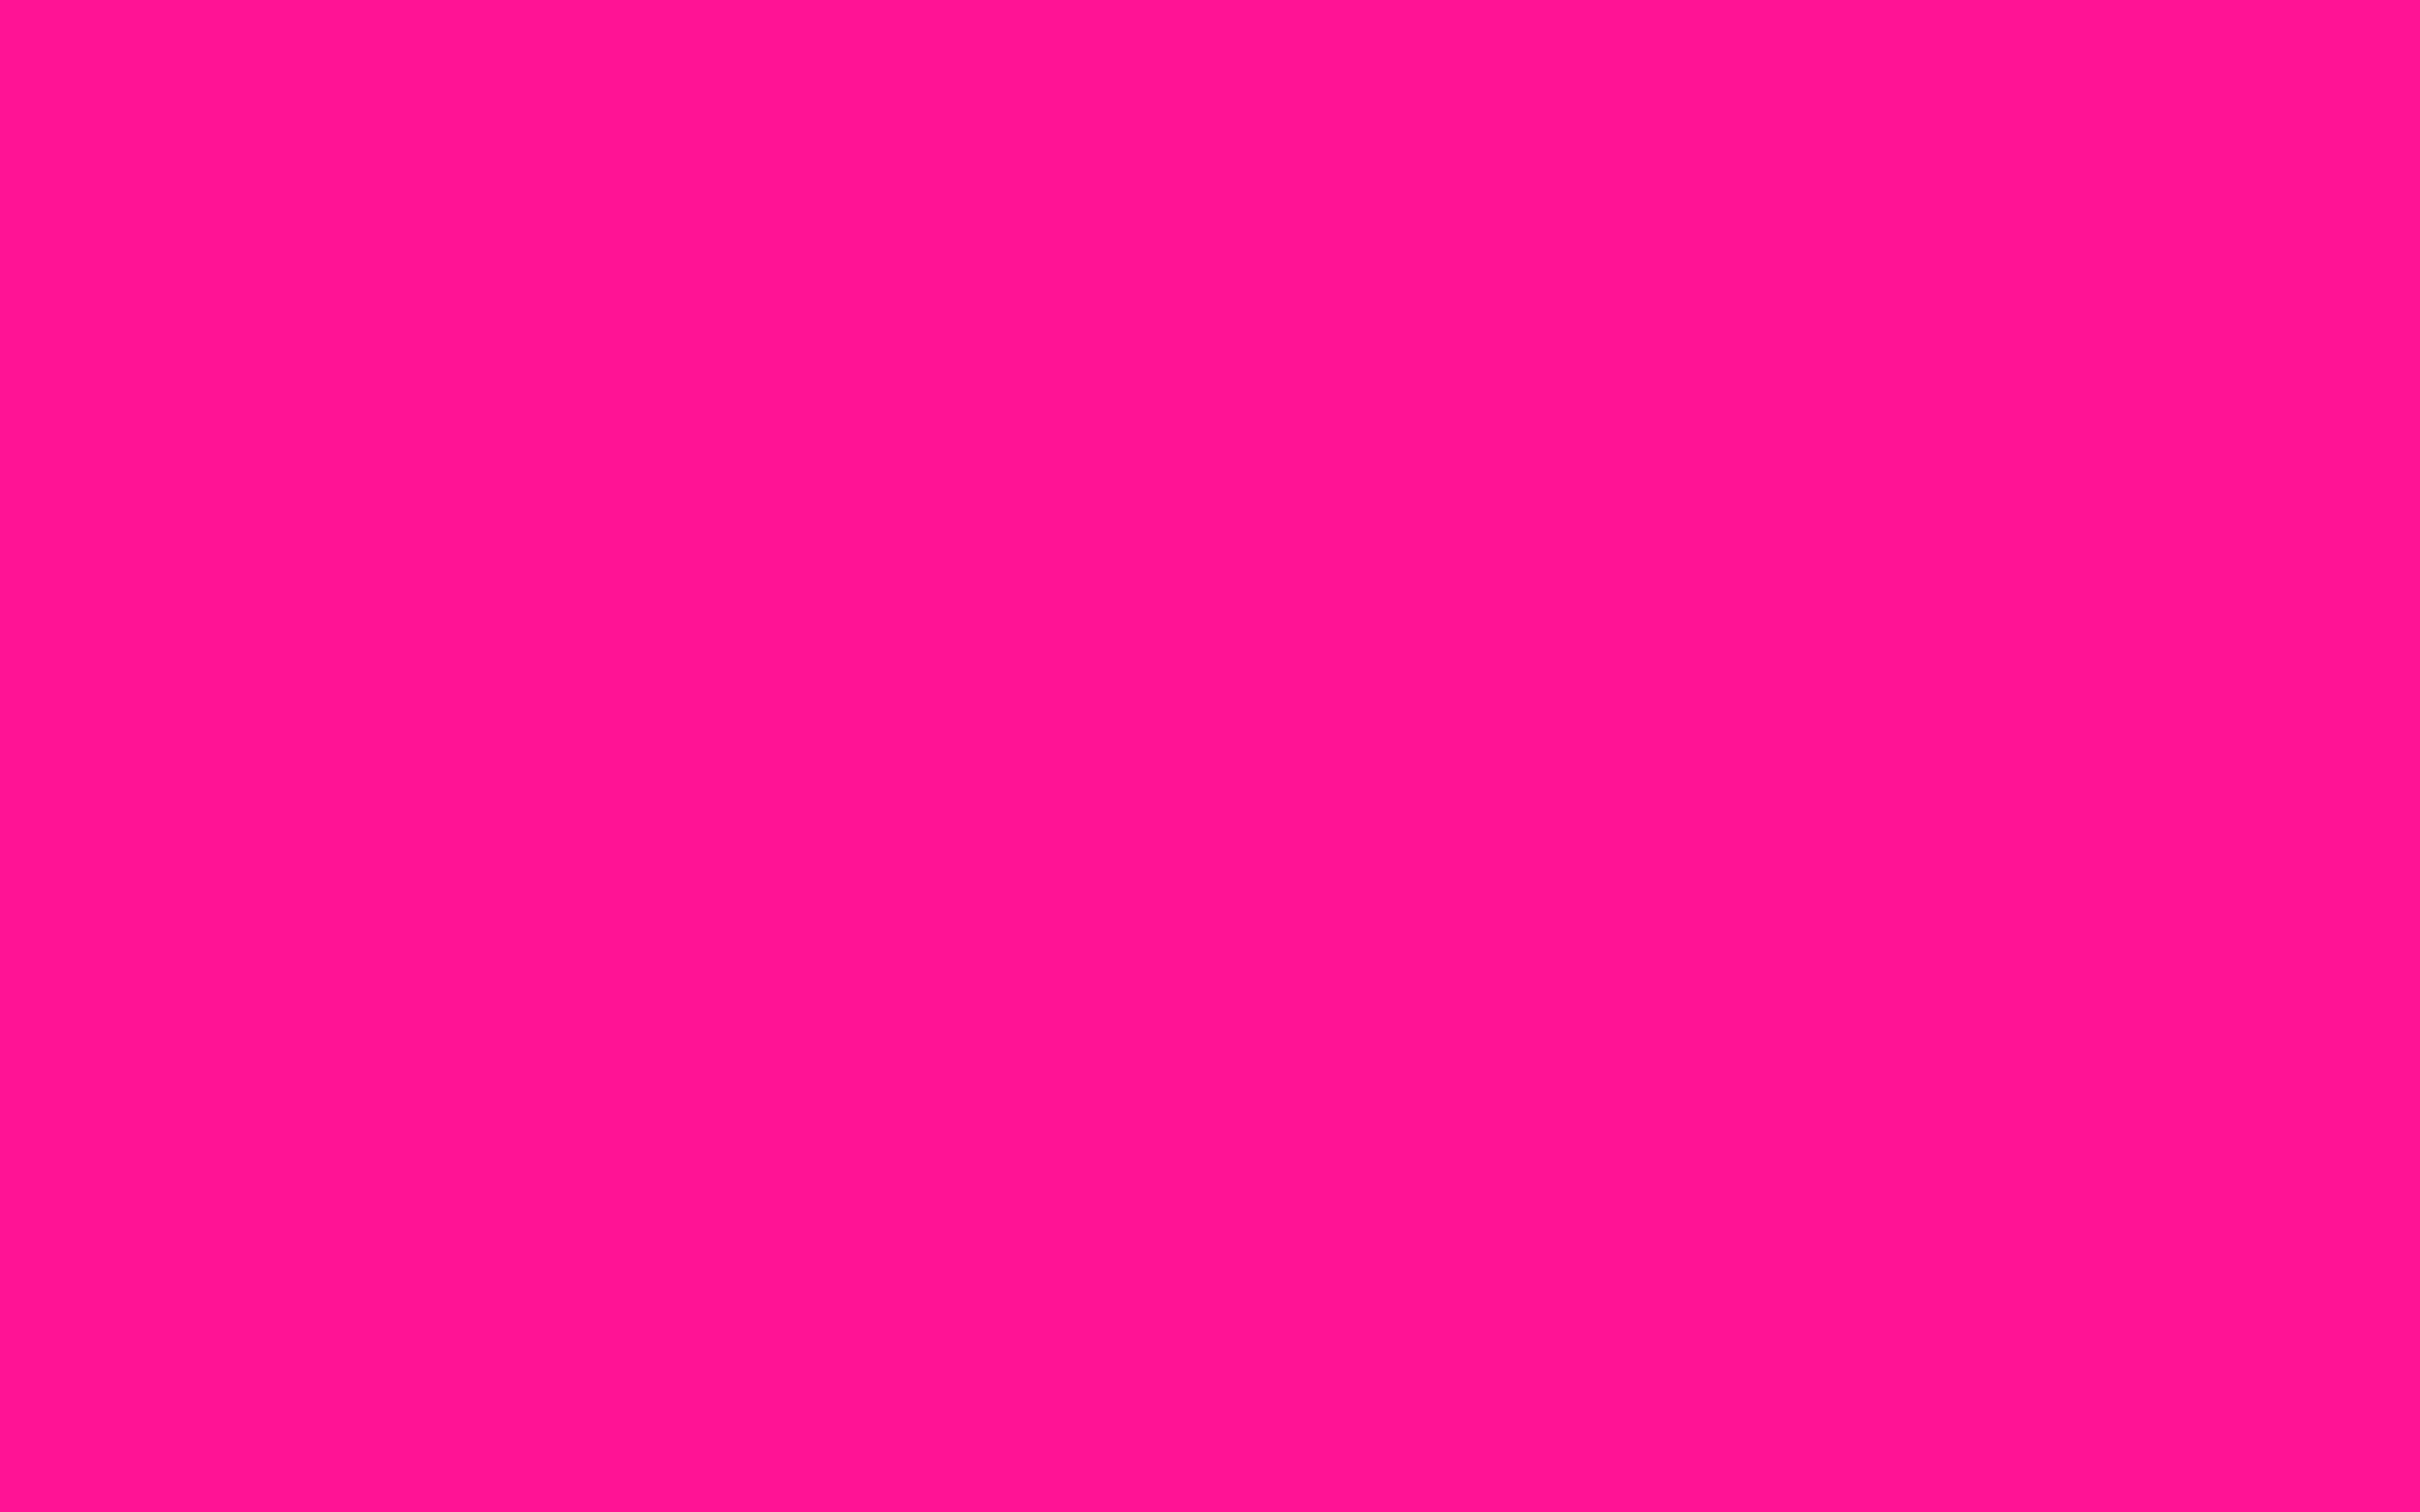 Hình nền màu hồng là một sự lựa chọn tuyệt vời cho những ai yêu thích màu sắc ấm áp và nữ tính. Với hình nền màu hồng, bạn có thể mang lại không gian yên bình, sự ấm áp cho màn hình của bạn. Hãy tải ngay hình nền màu hồng này để có thể đón nhận những cảm xúc đẹp nhất.